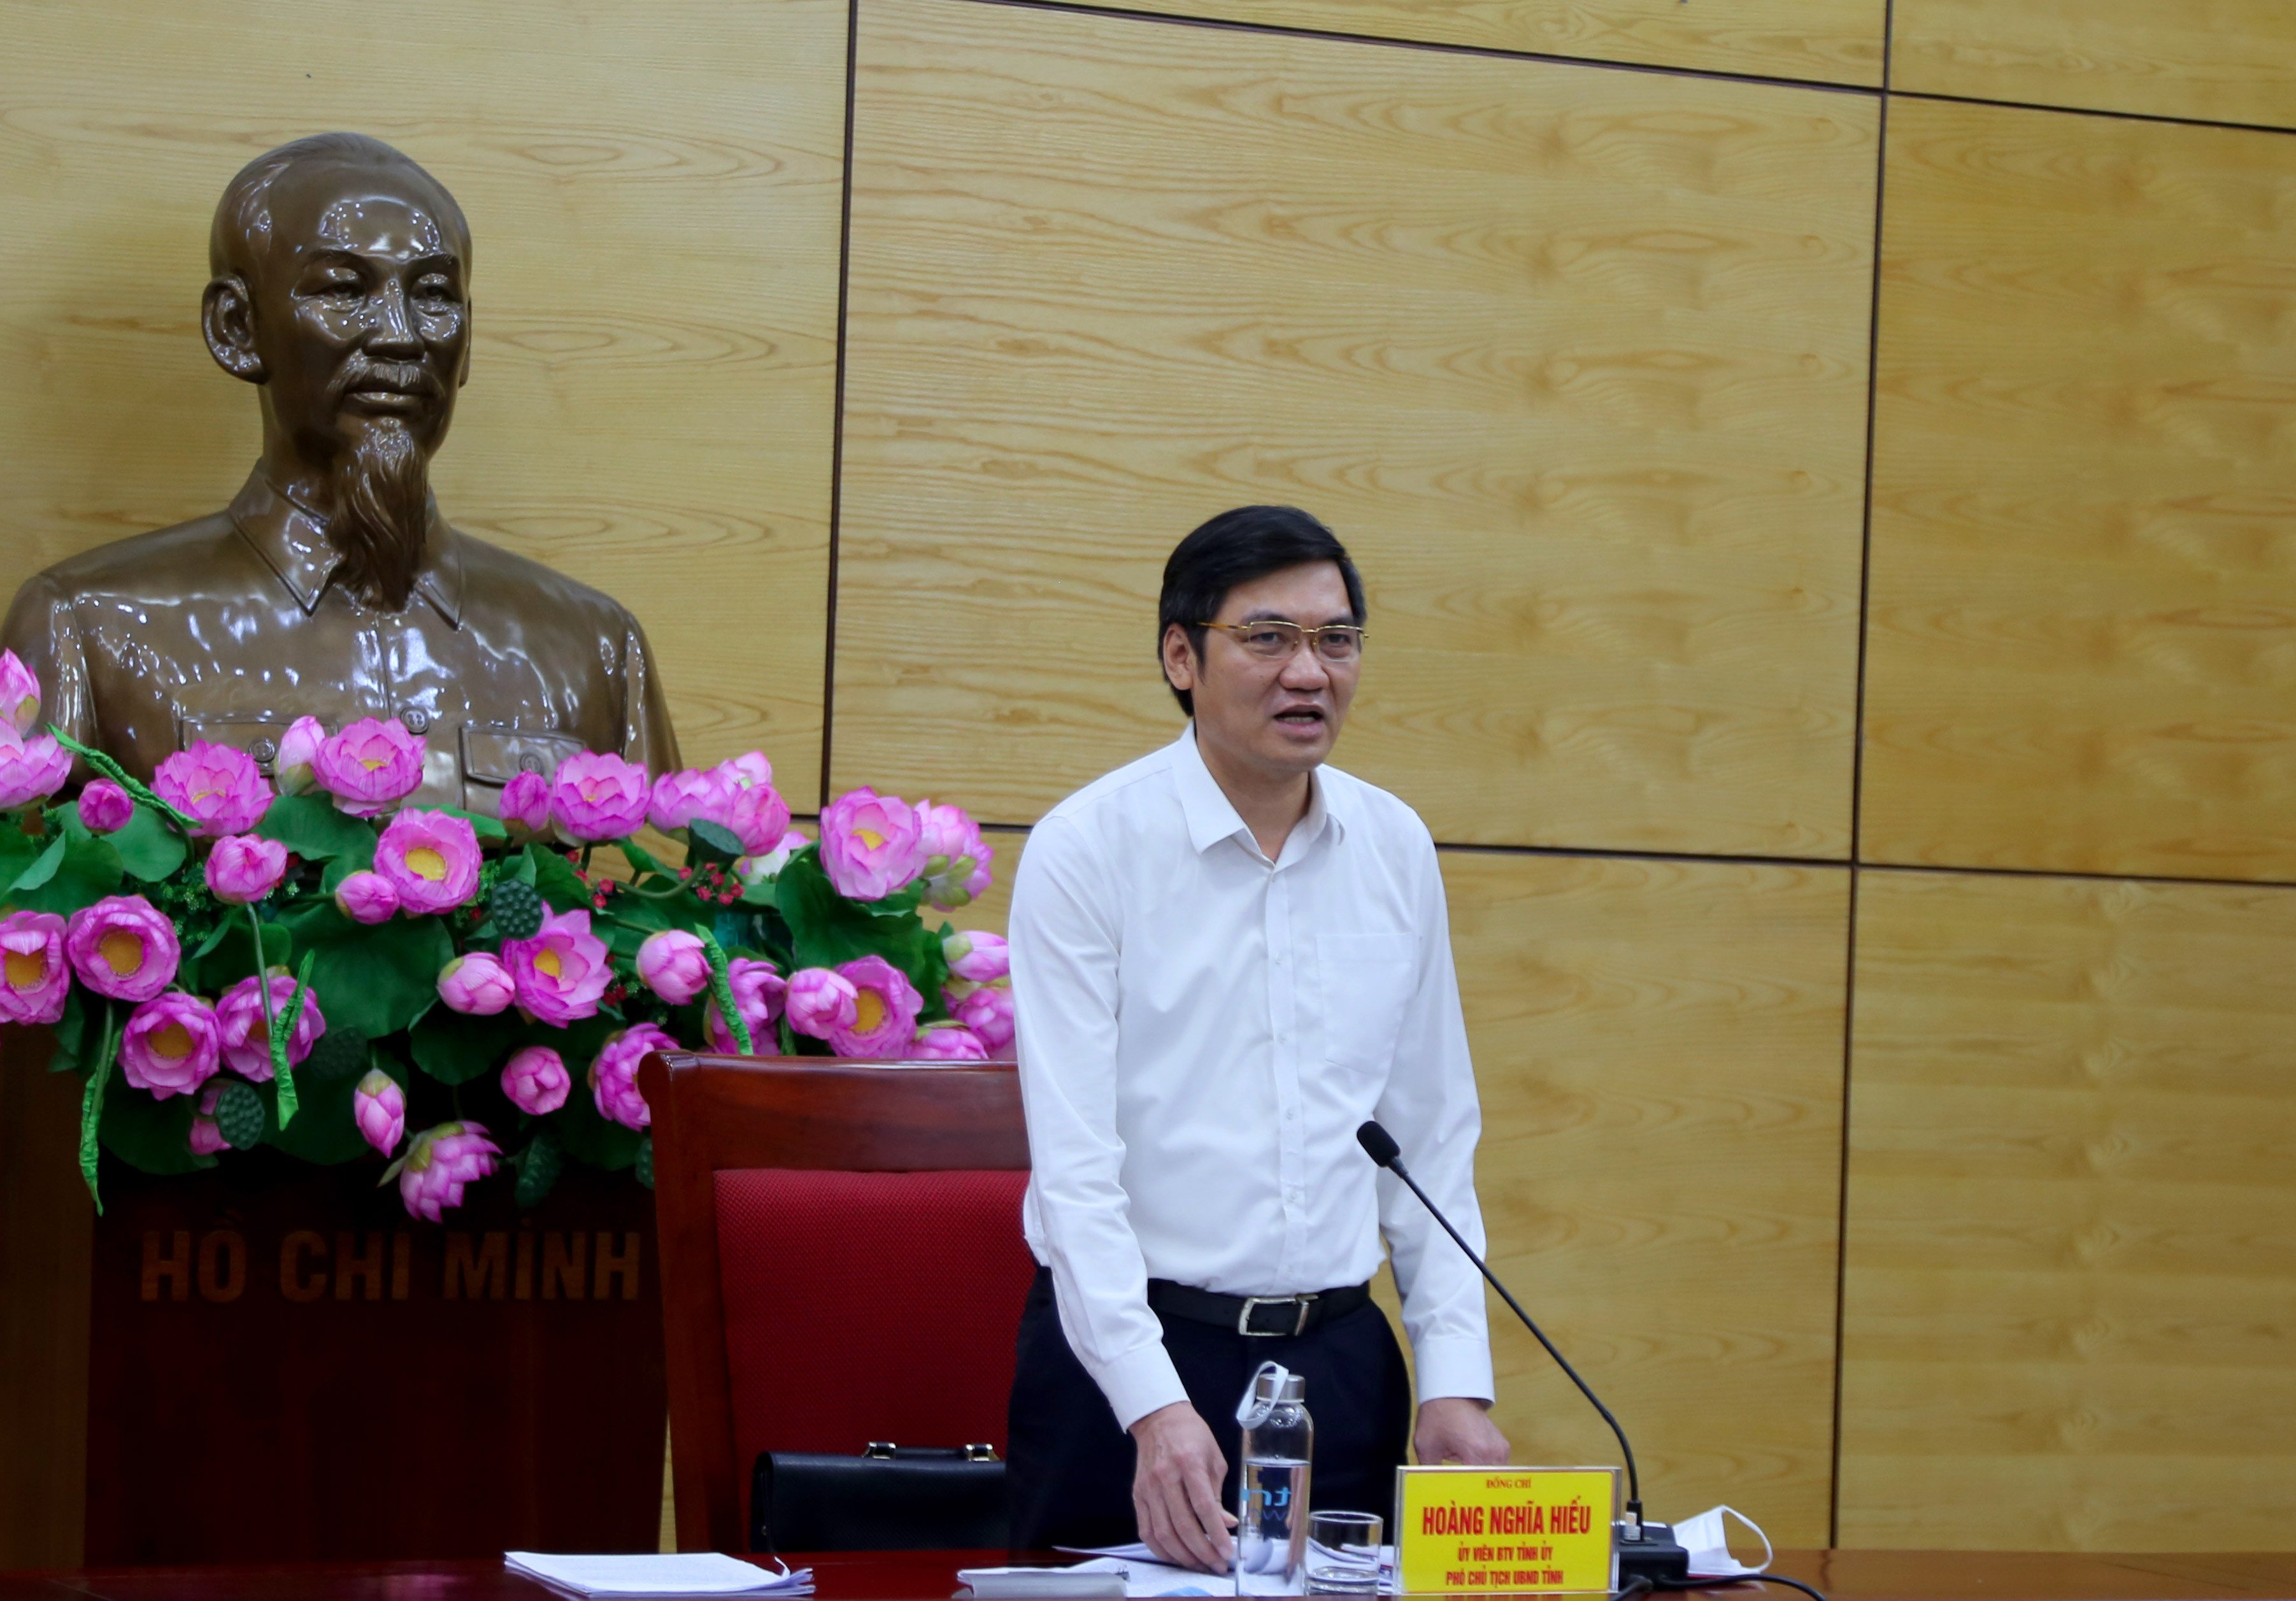 Phó chủ tịch UBND tỉnh Hoàng Nghĩa Hiếu phát biểu kết luận cuộc họp. Ảnh Thu Huyền